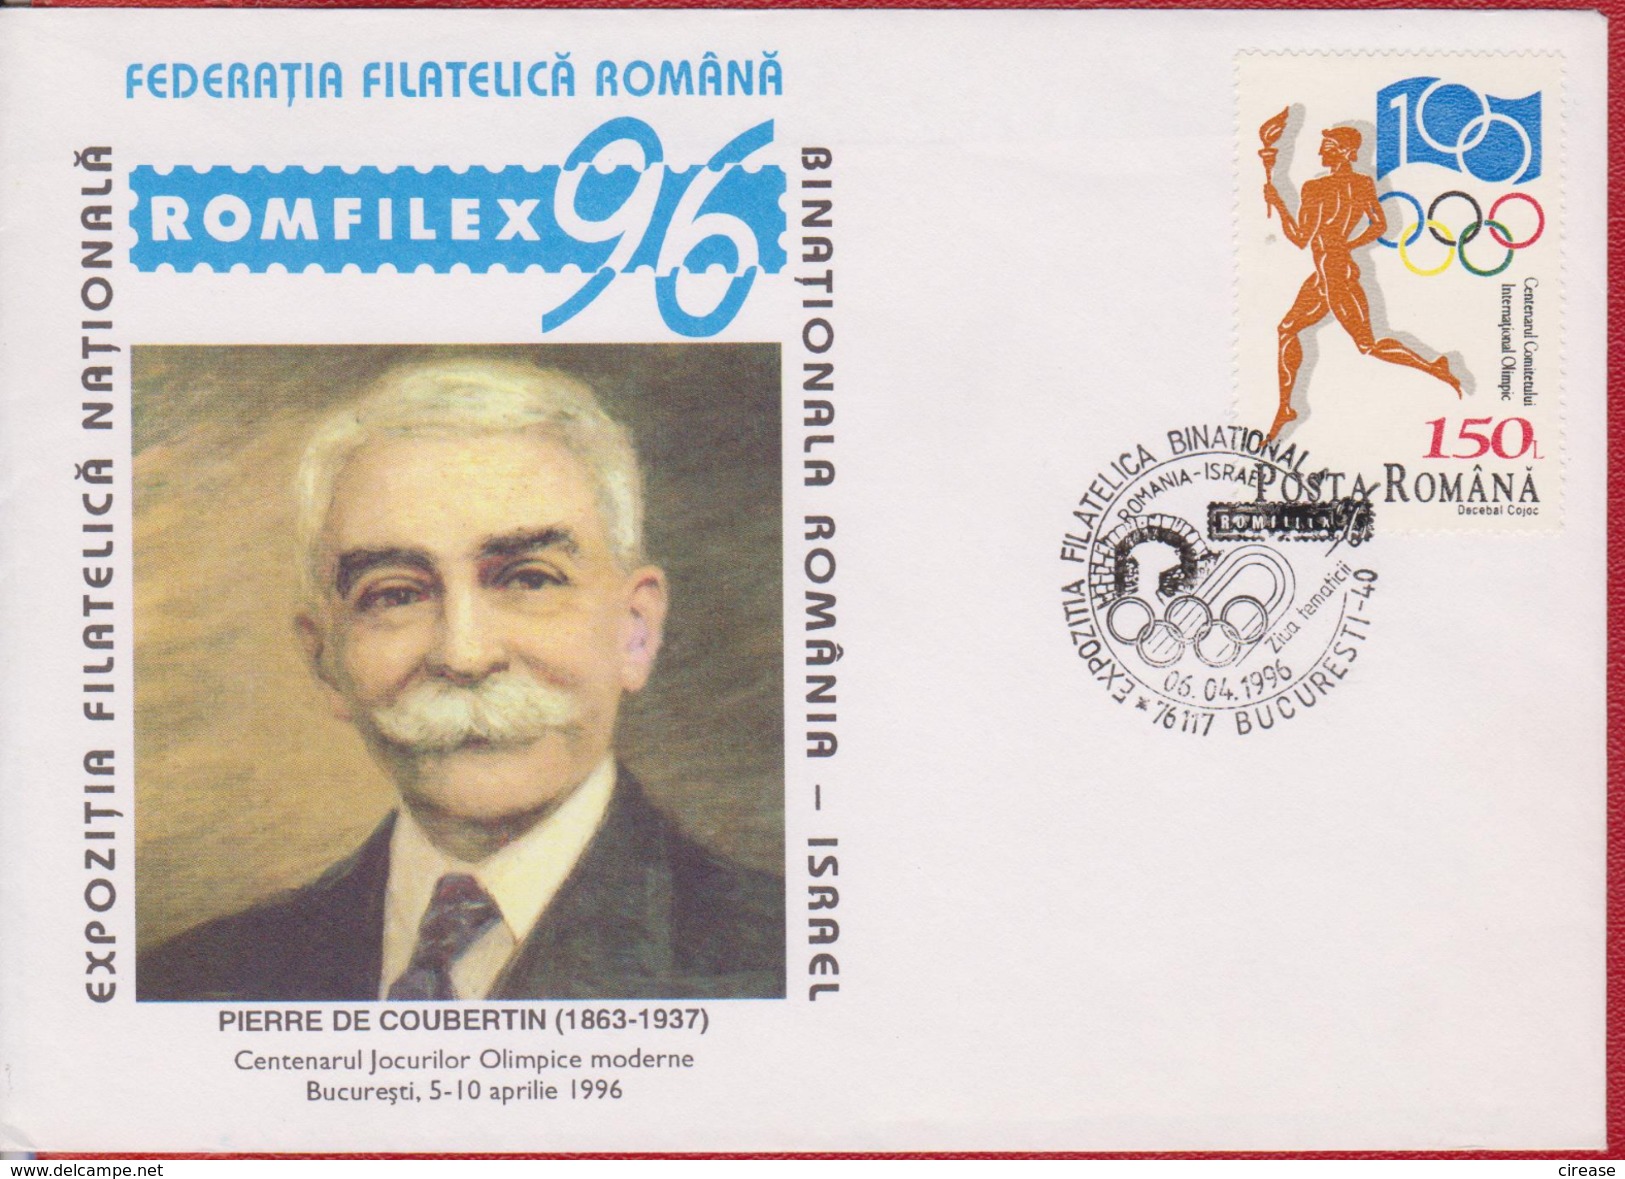 PIERRE DE COUBERTIN ROMANIA COVER - Summer 1896: Athens